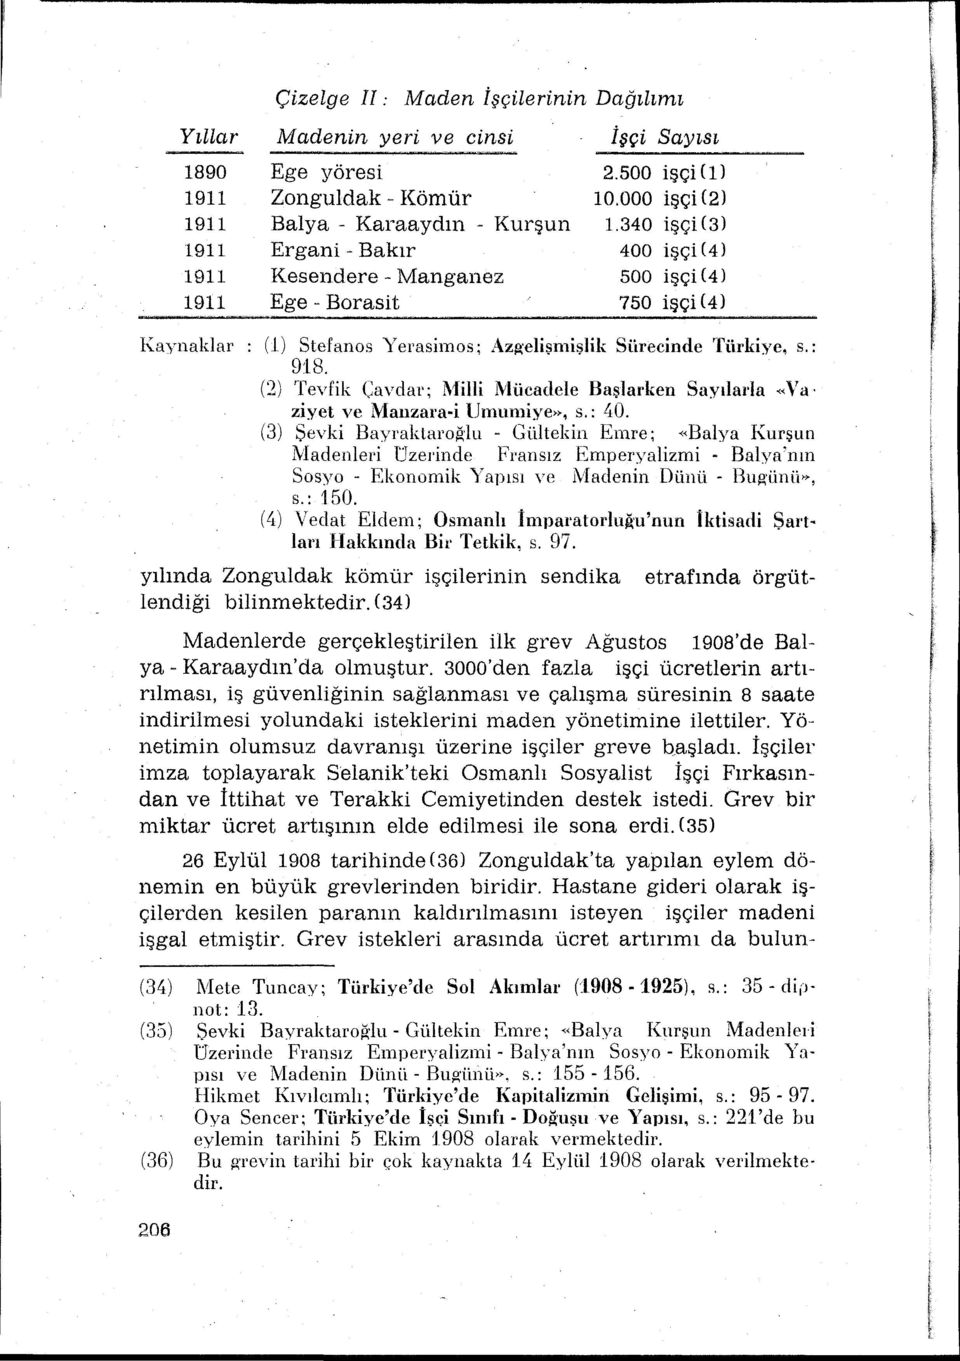 (2) Tevfik Cavclar; Mili Mücadele Başlarken Saylada "Va ziyet ve Manzara-i Umumiye», s.: 40.